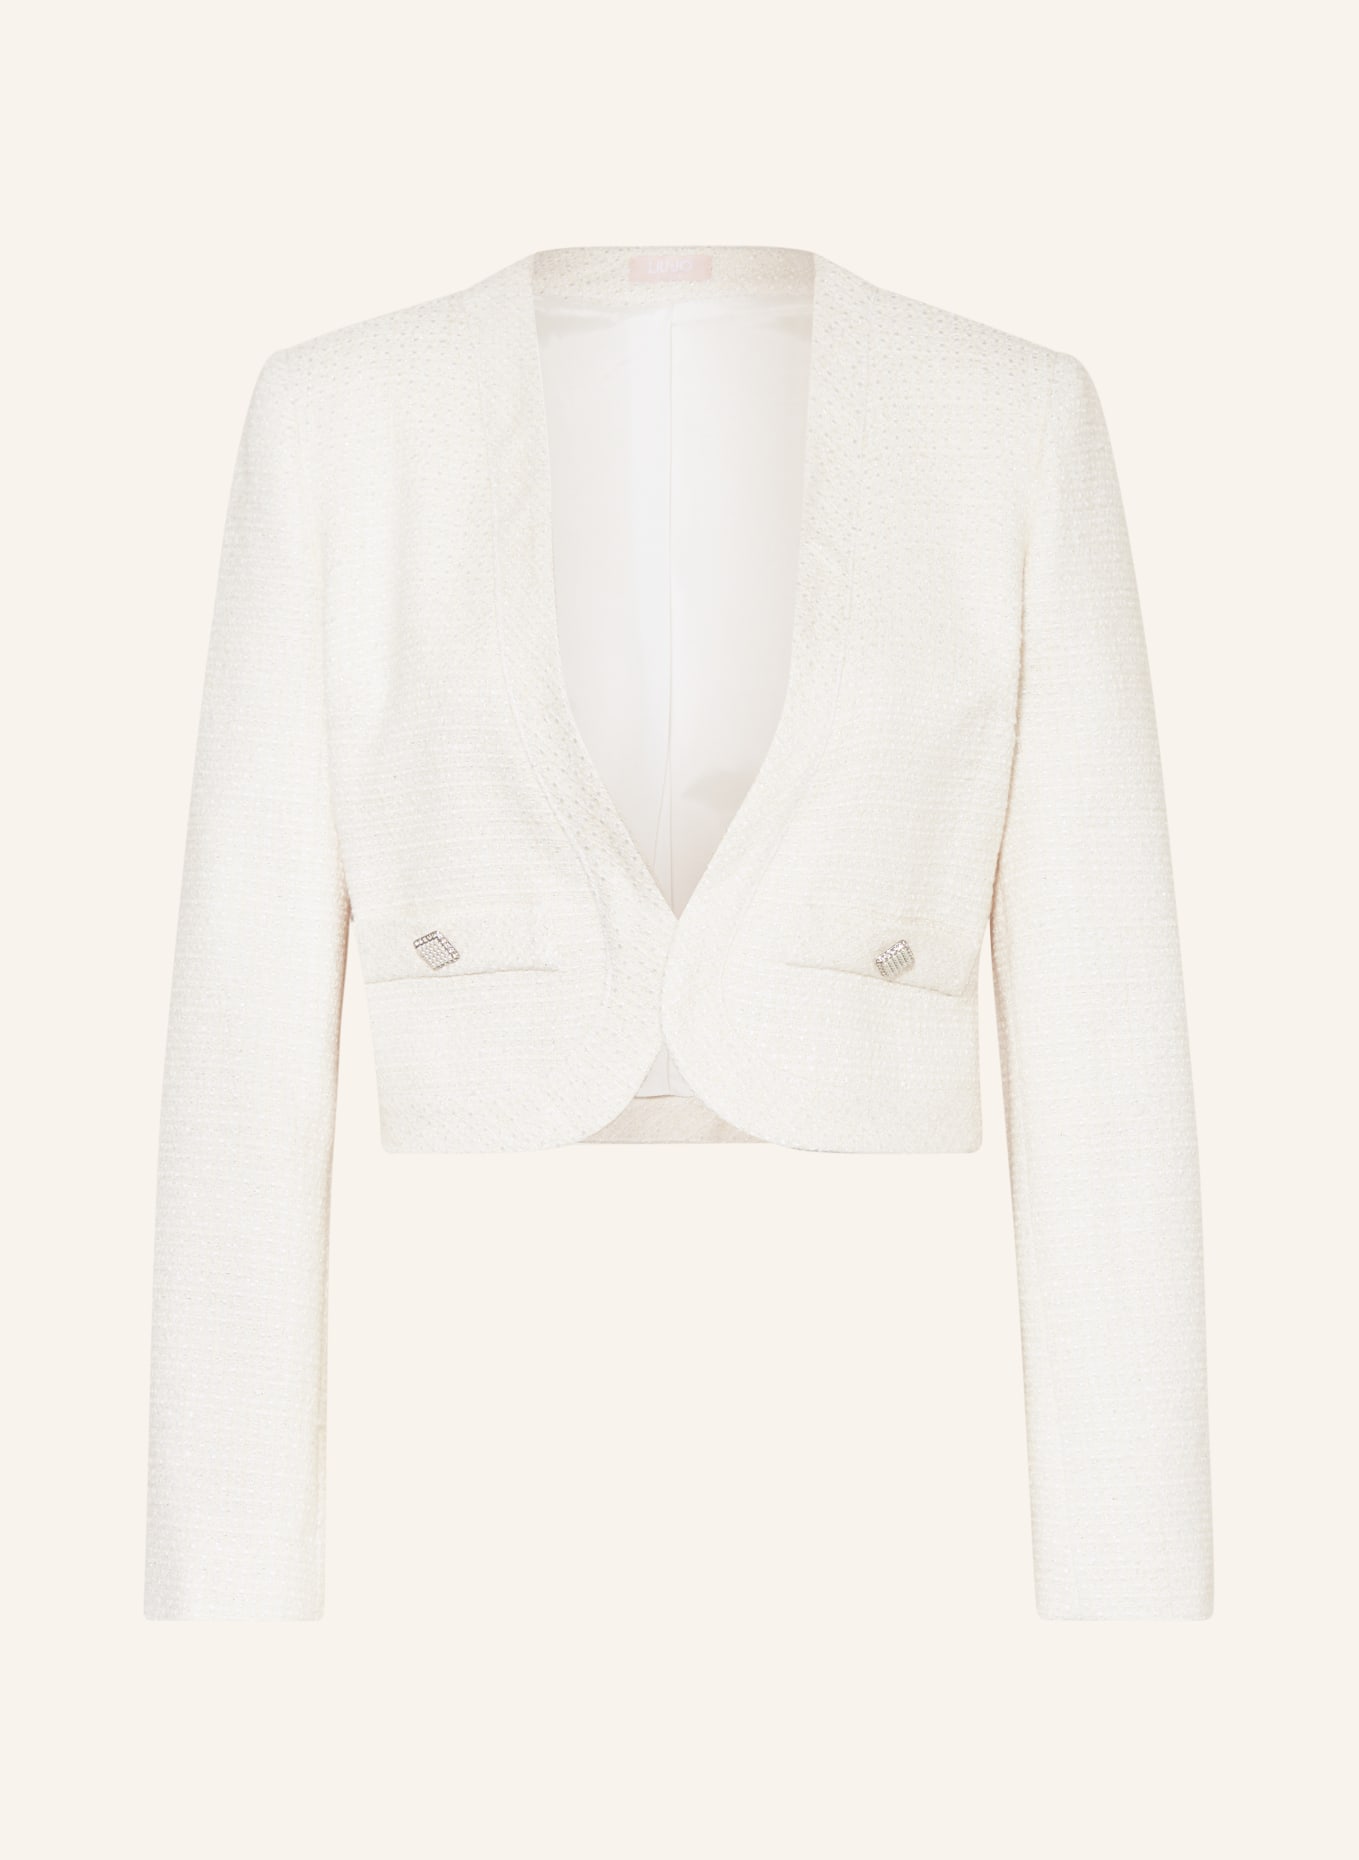 LIU JO Bouclé blazer with glitter thread, Color: ECRU (Image 1)